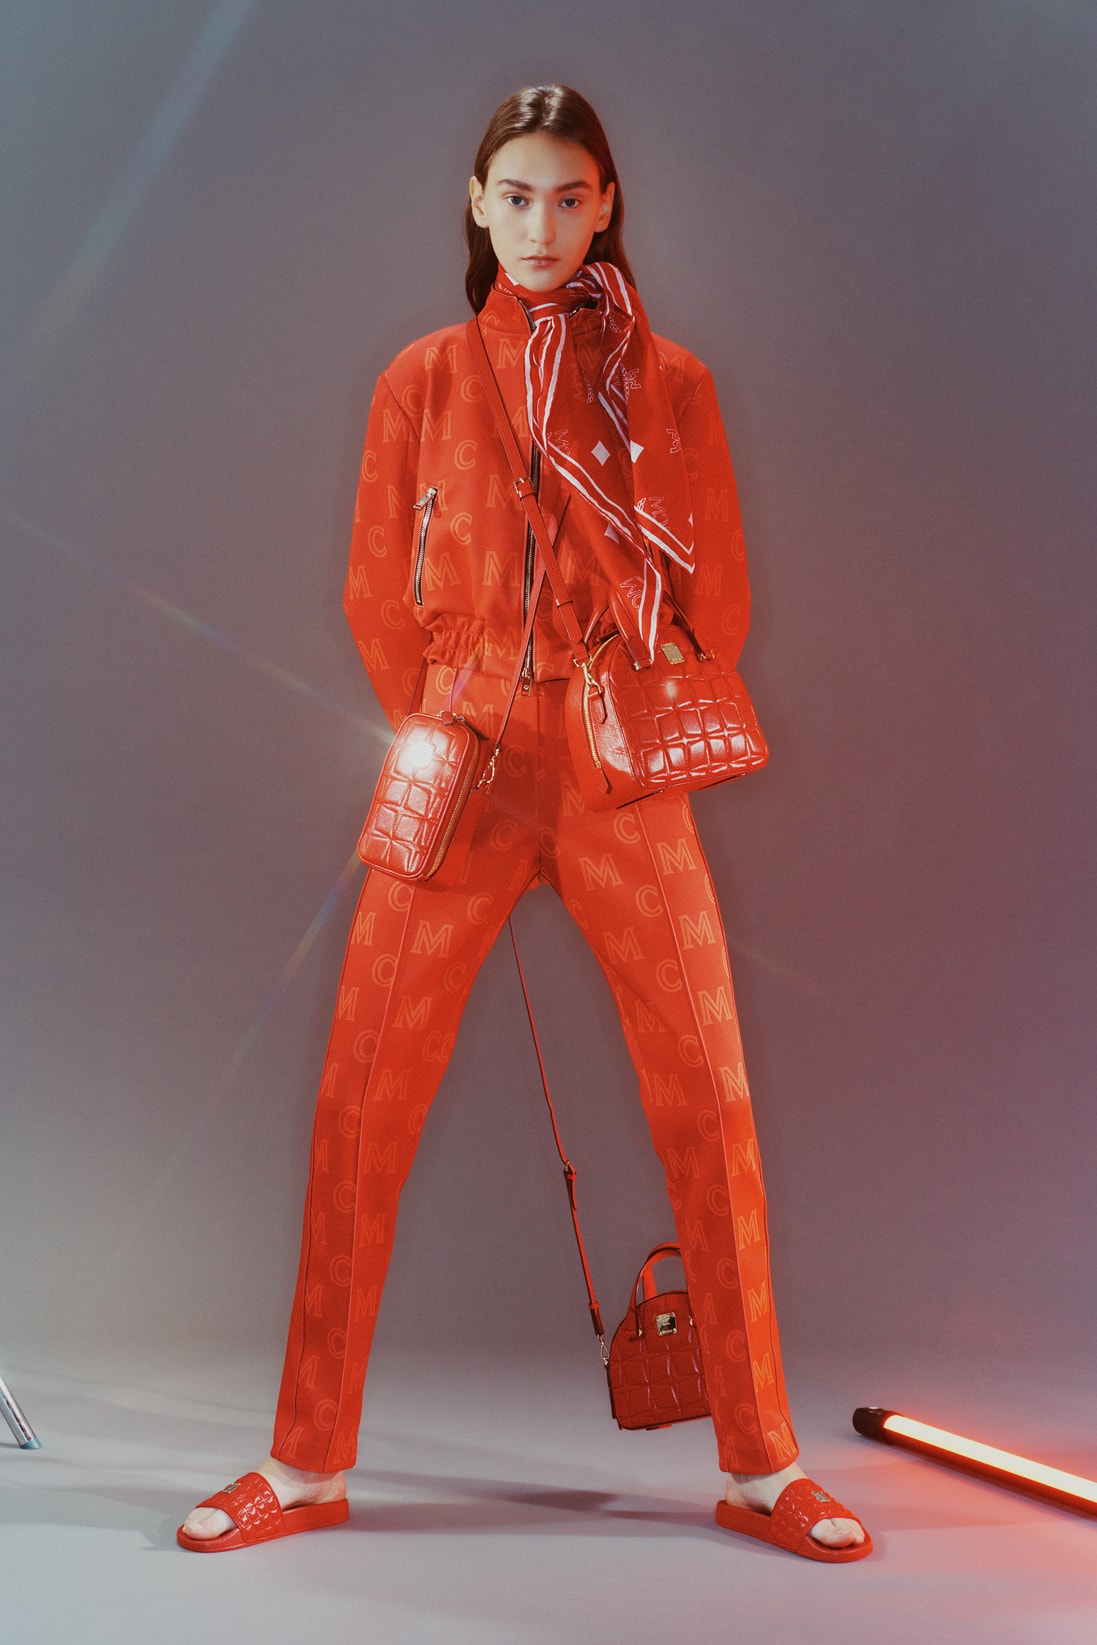 MCM Spring/Summer 2020 Collection Lookbook Track Jacket Pants Scarf Slides Orange Red